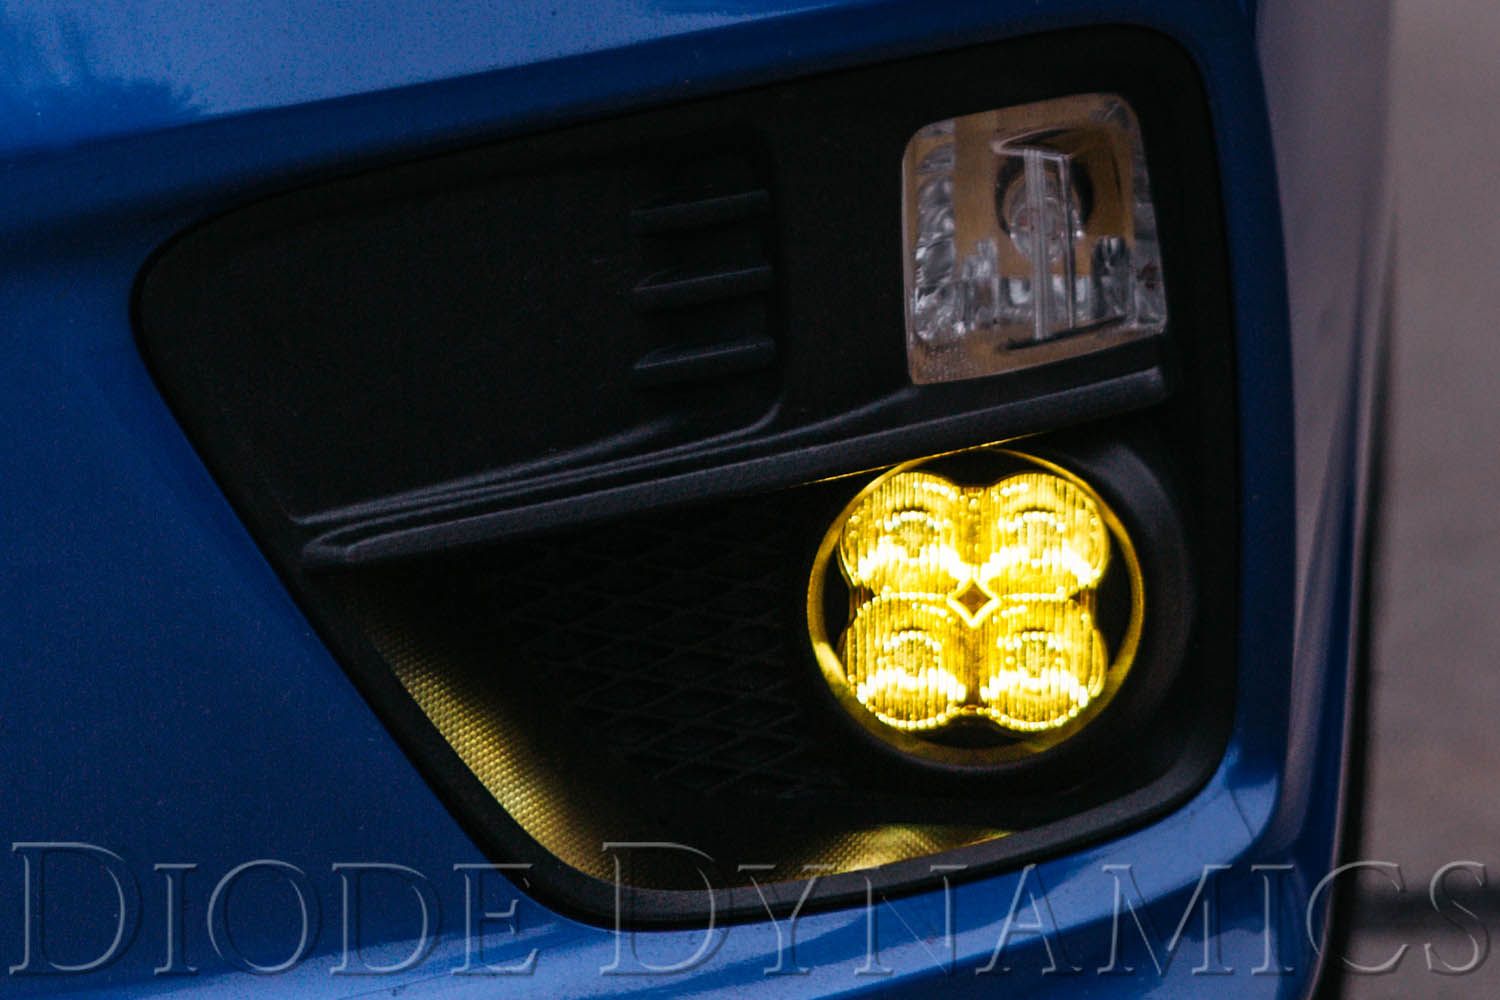 SS3 LED Fog Light Kit For 2007-2012 Nissan Sentra